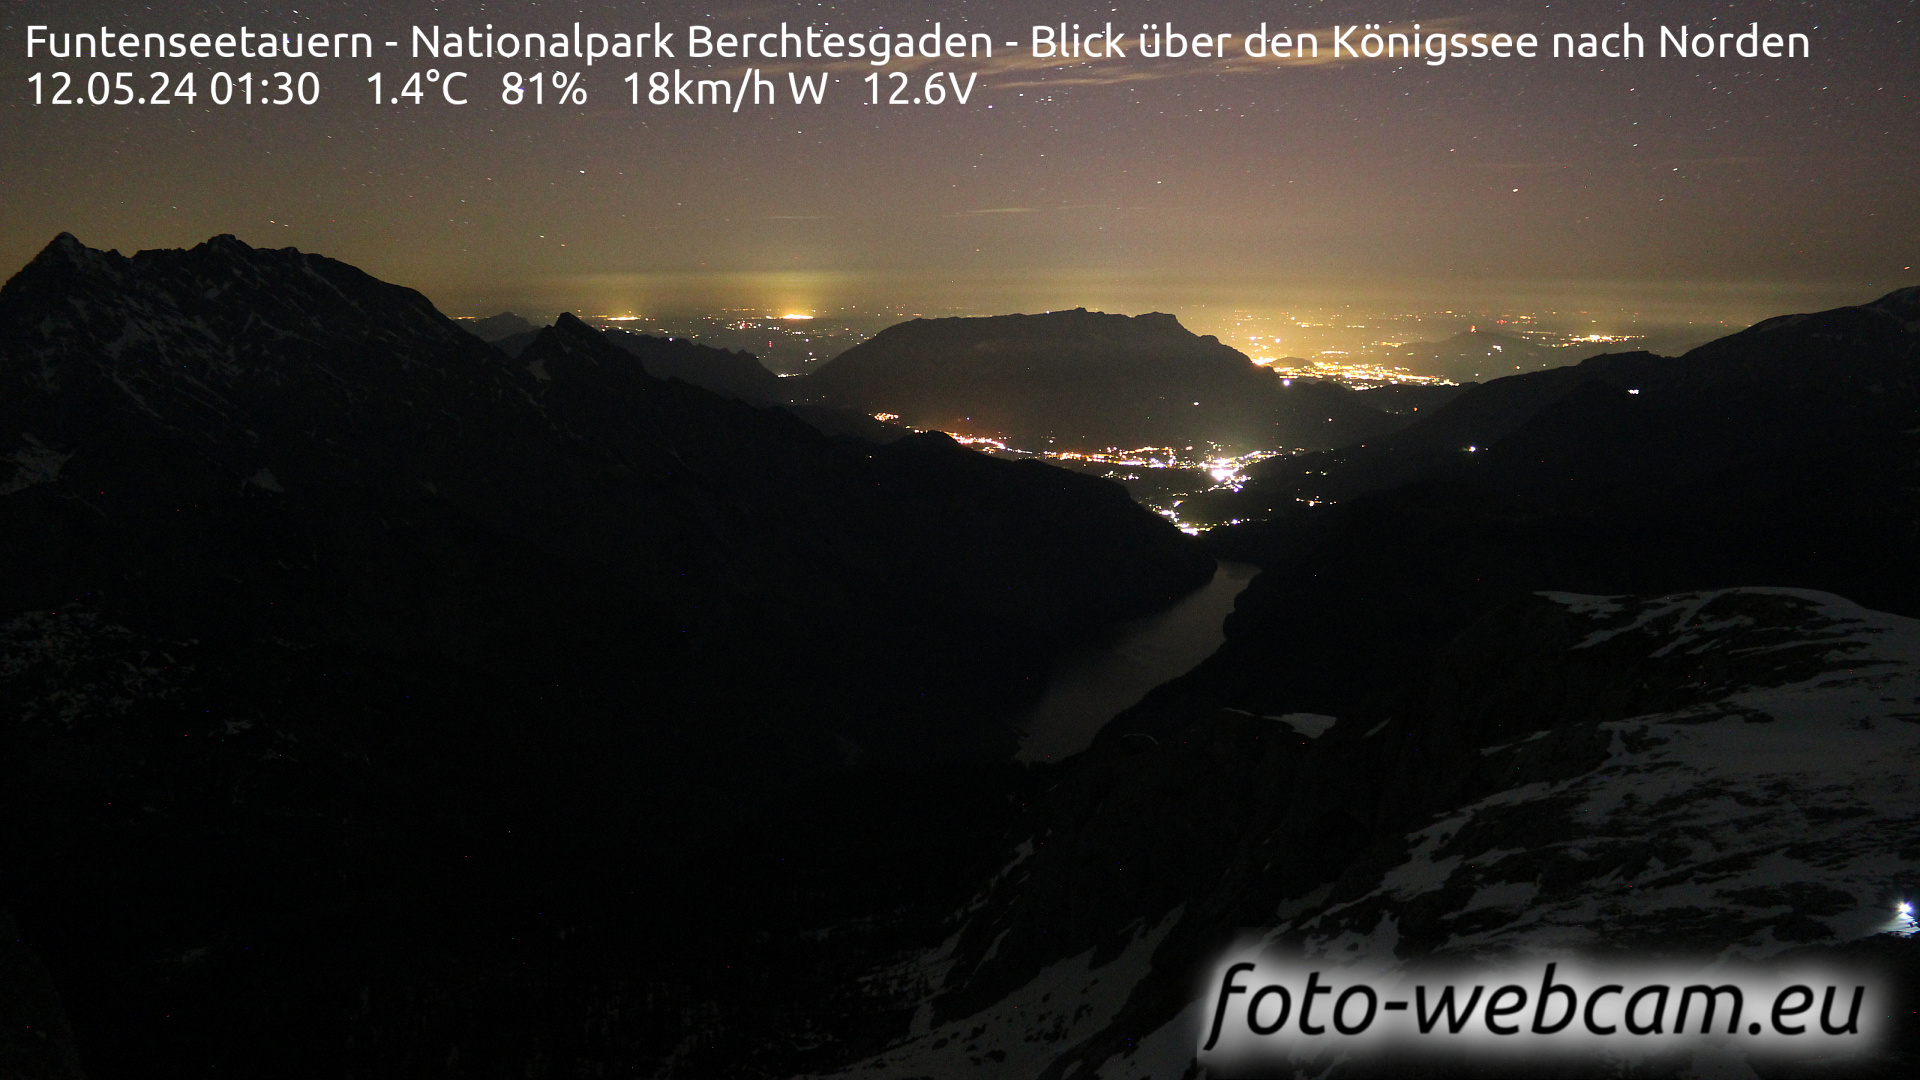 Berchtesgaden Do. 01:48